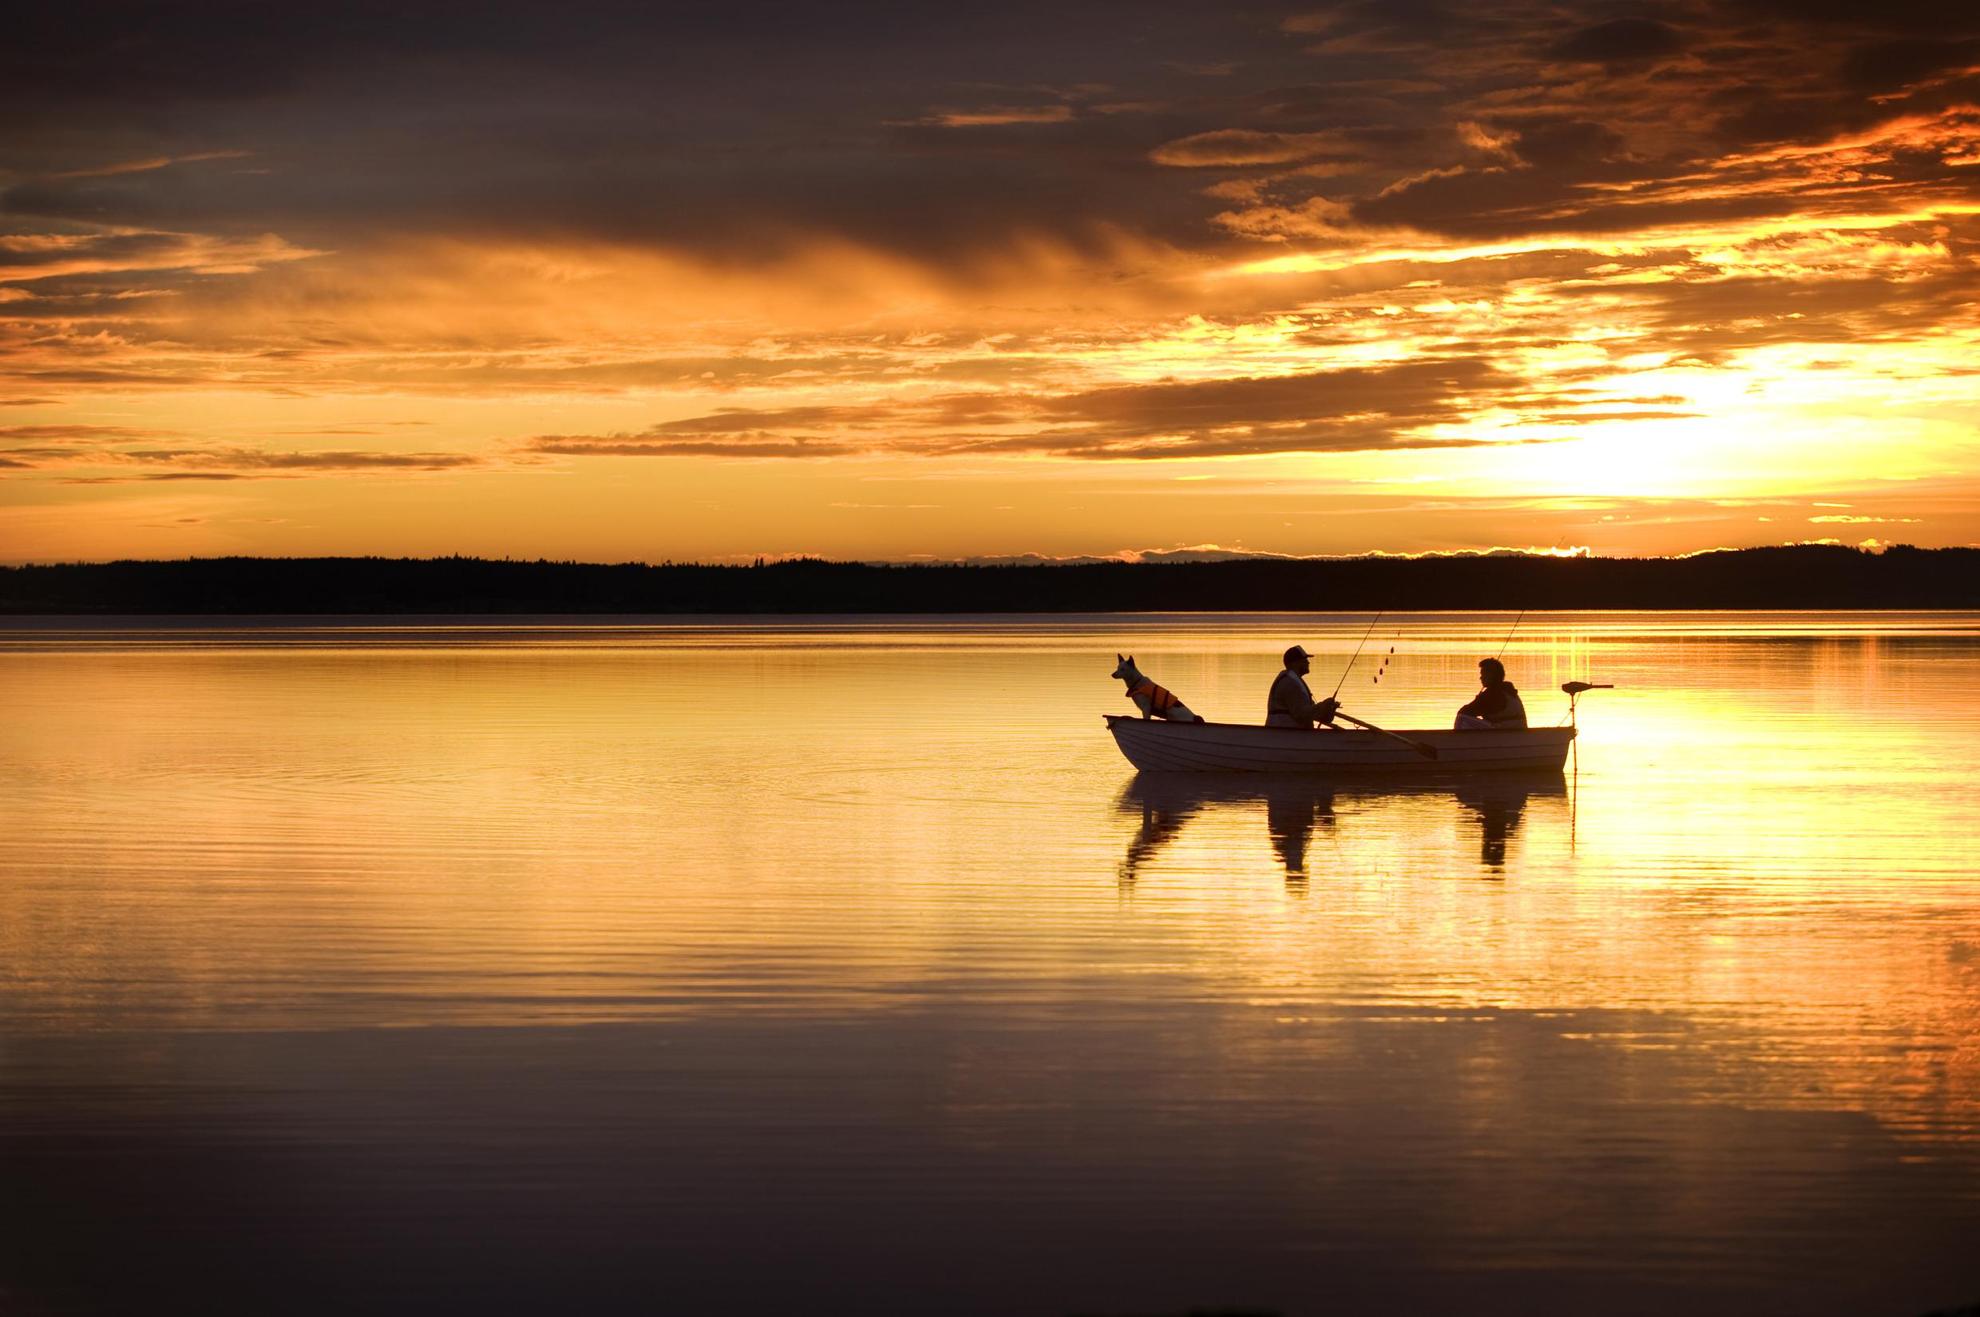 Twee mannen en een hond in een kleine boot op een meer vissen in de middernachtzon. De oranje lucht weerspiegelt in het meer.